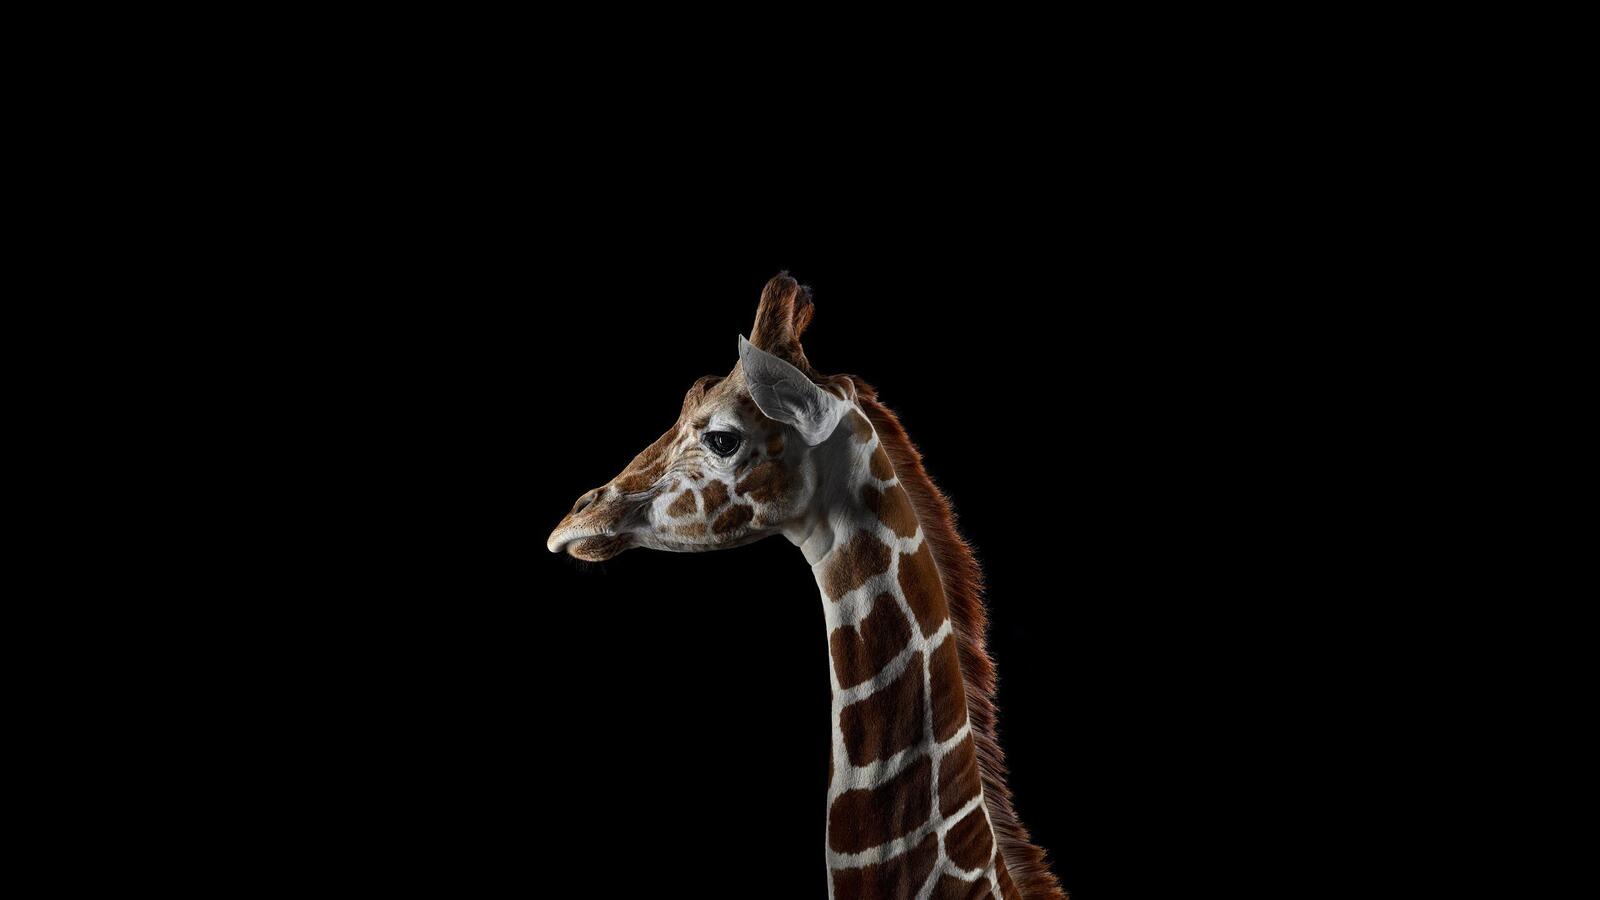 Wallpapers giraffes mammals photos on the desktop